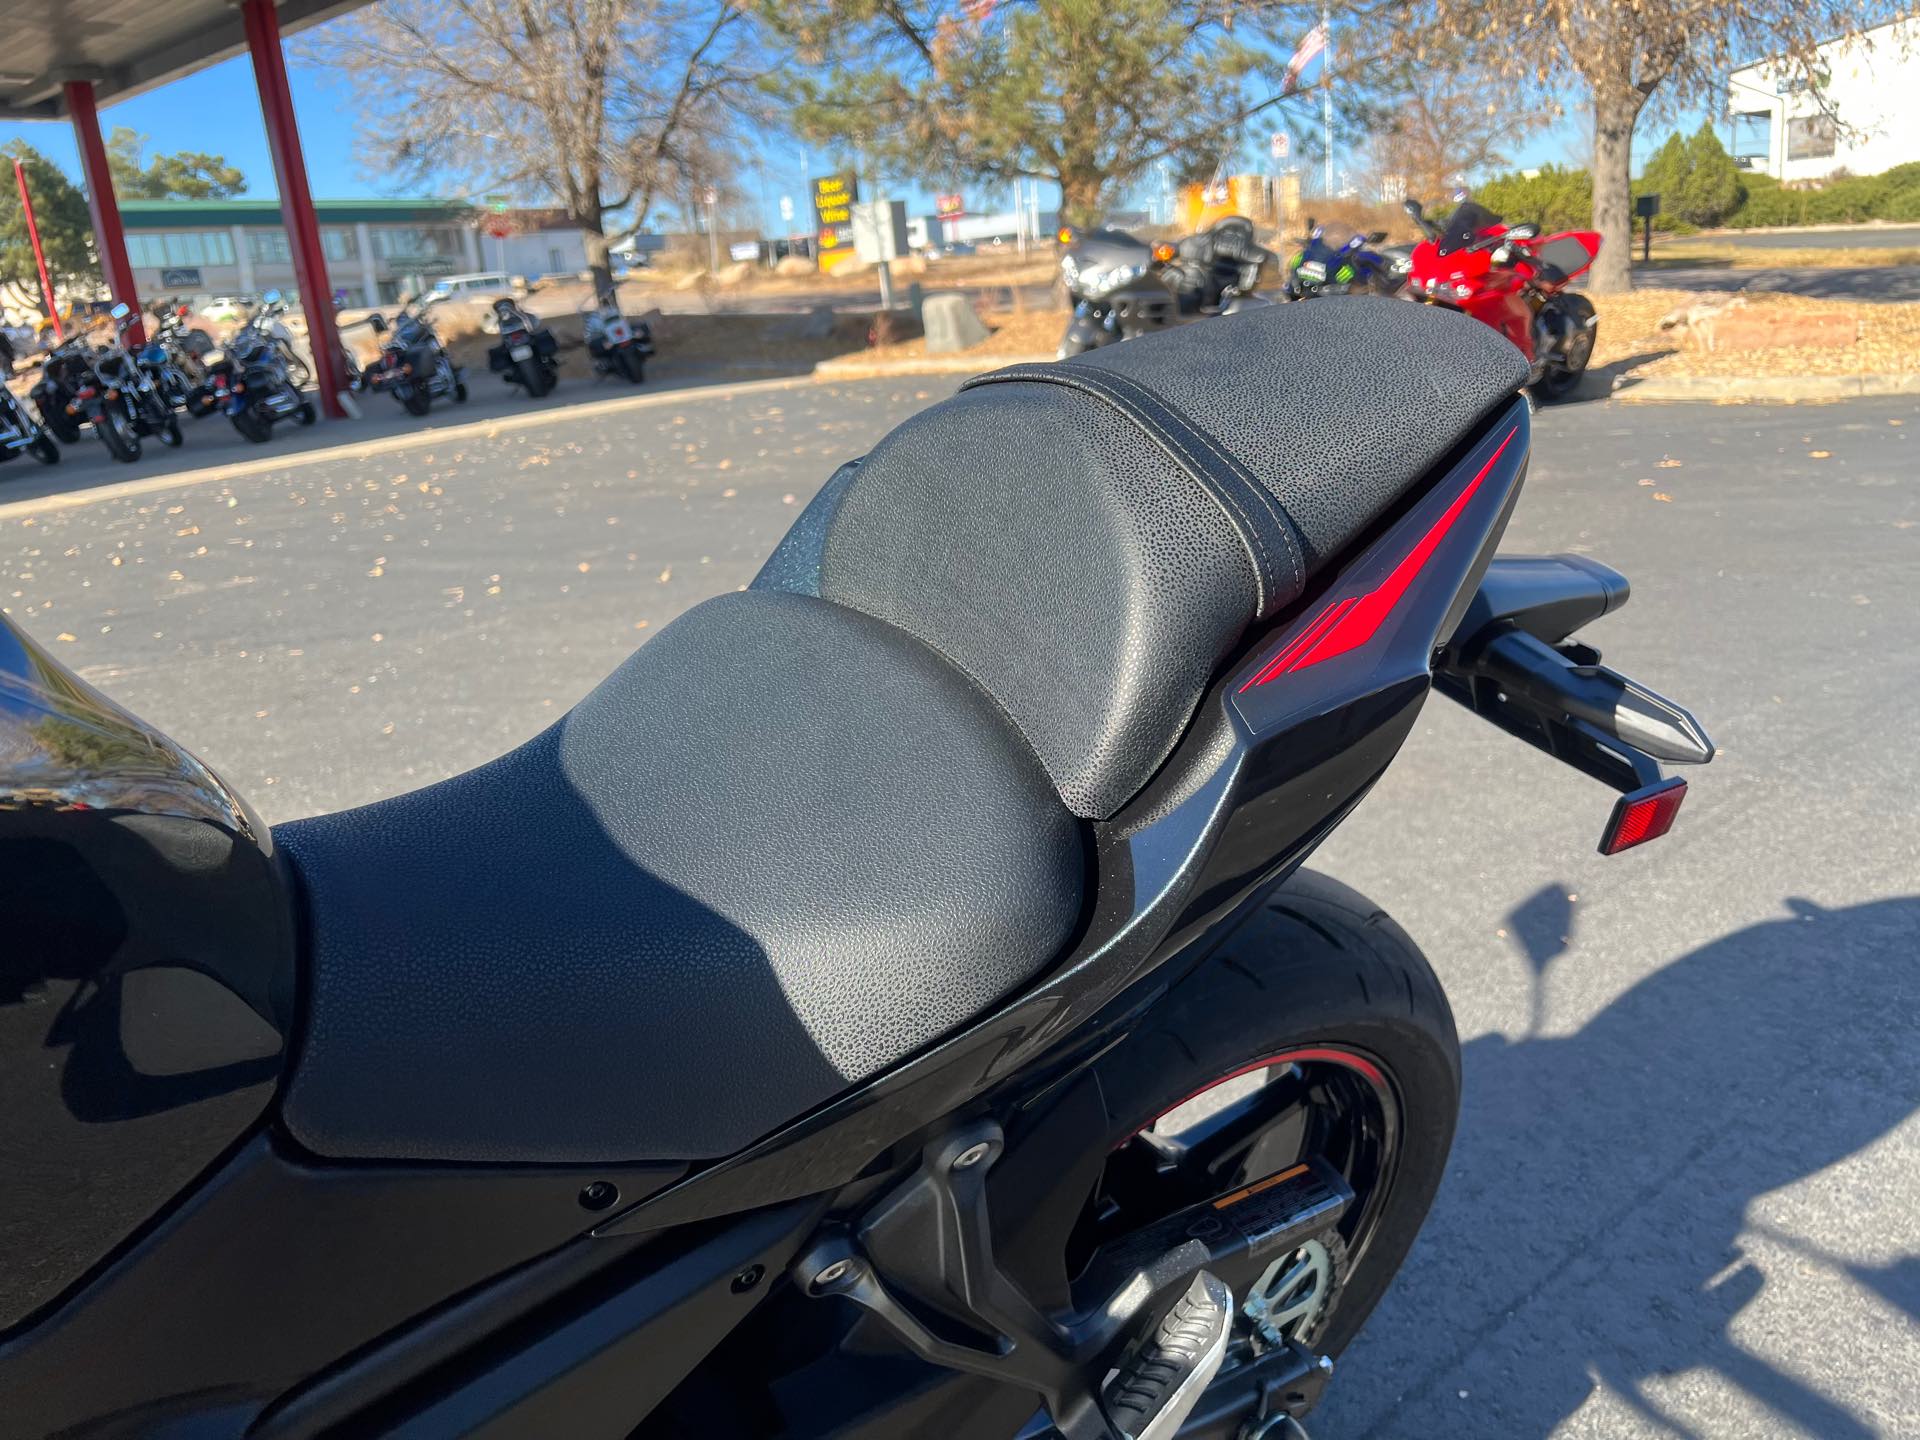 2023 Kawasaki Z650 Base at Aces Motorcycles - Fort Collins